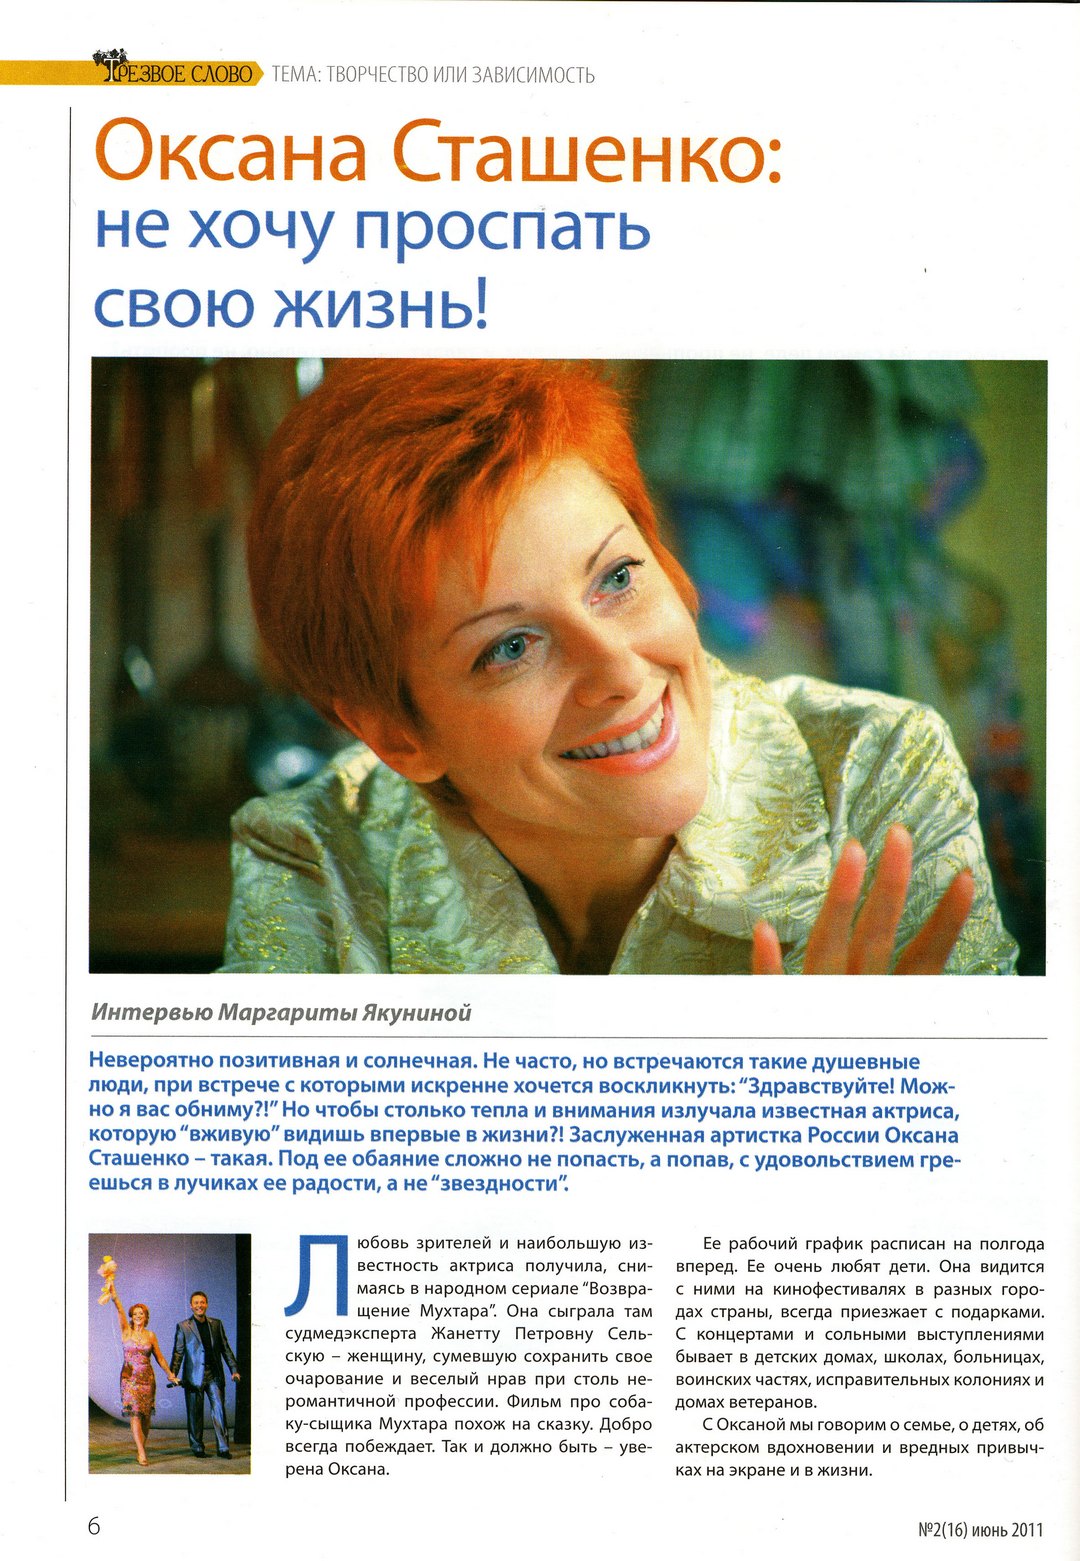 Оксана Сташенко: "Не хочу проспать свою жизнь" читать